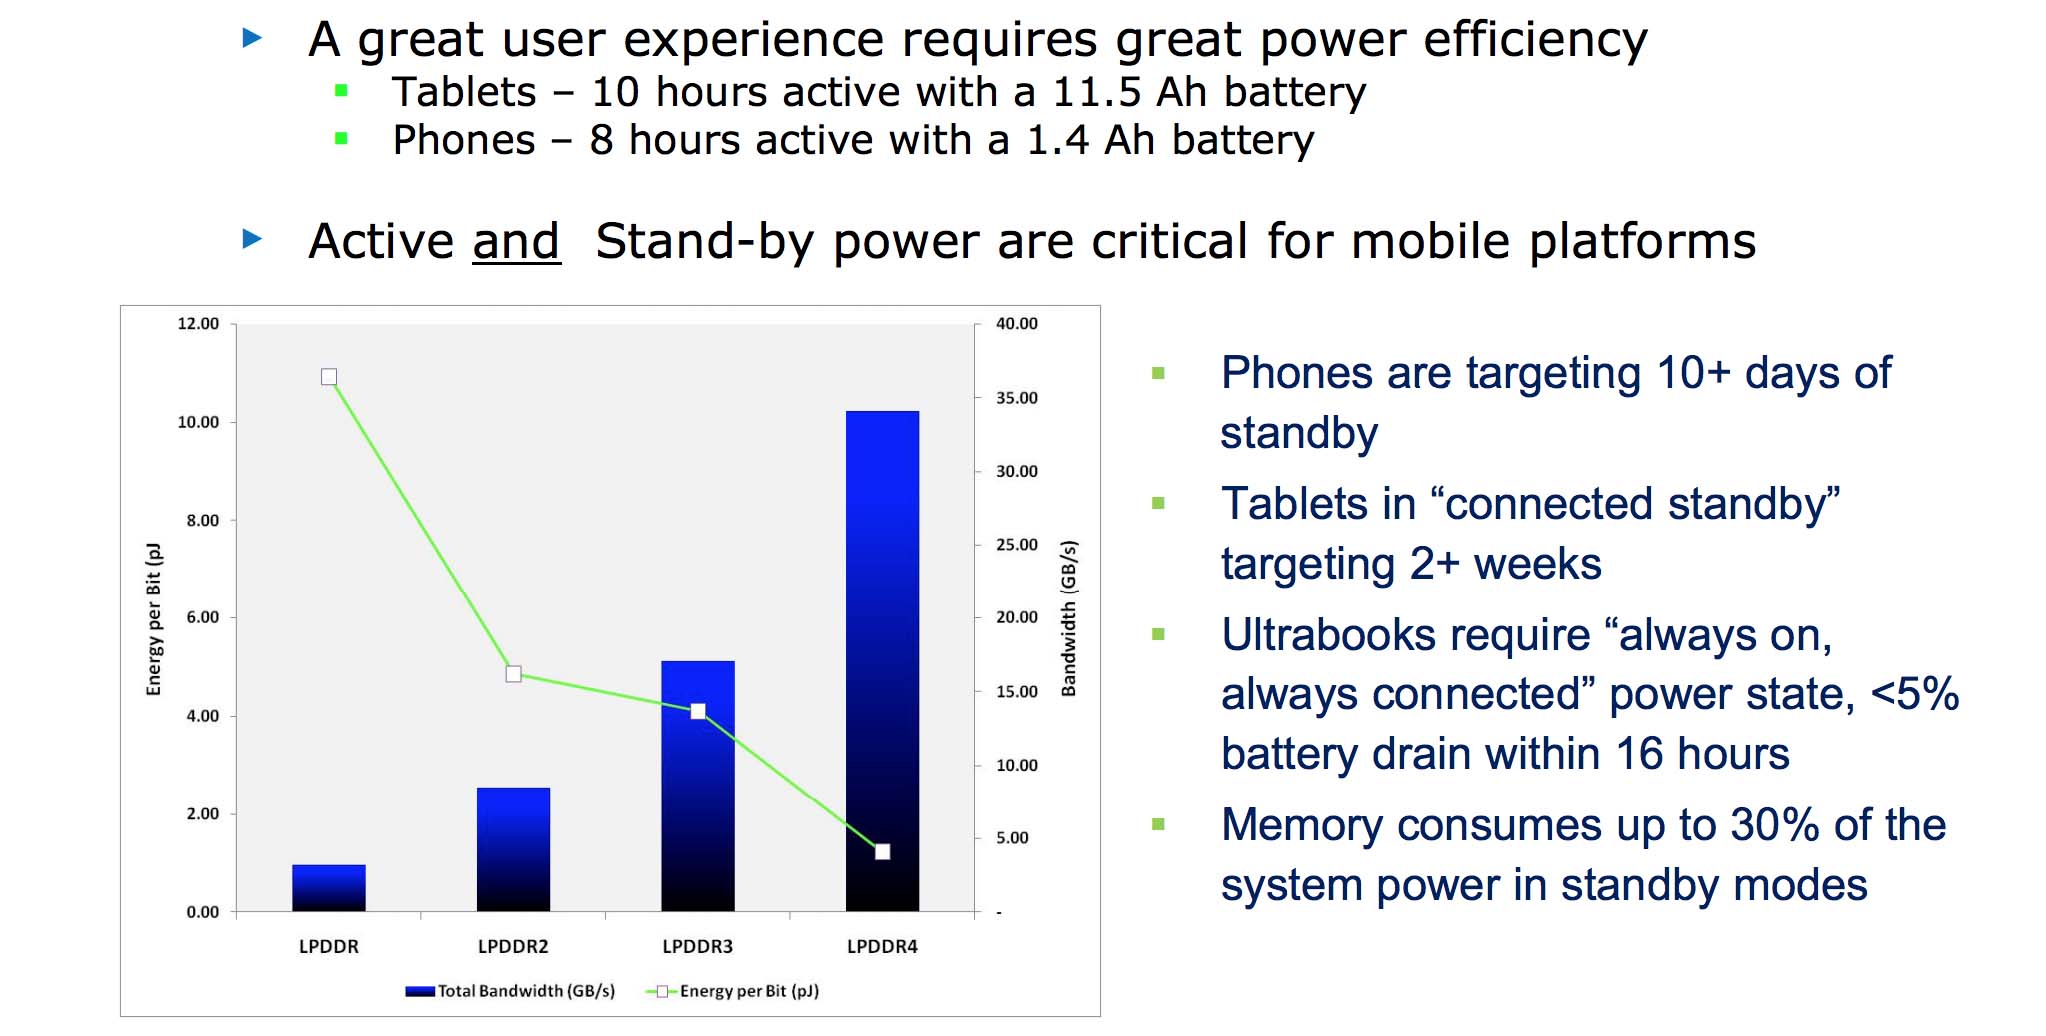  低電力要件はモバイルに不可欠であり、LPDDR4 はこれまでで最もエネルギー効率の高いメモリです。</p> </div> <p>Micron の技術は、標準の 2 x 16 チャネル構成で 2133 MHz クロック、4266 MT/s の転送速度で、x64 で 32 GB/s という標準のピーク帯域幅を目標に、最高を記録します。 Samsung の最新チップは、1600MHz 相当で最高 3200 MT/s、x64 での理論上のピーク帯域幅は 25.6 GB/s です。</p> <p>メモリ帯域幅は、ここで注目すべき重要な仕様です。 ピークレベルで動作することはほとんどありませんが、この数値は、メモリが 1 秒間に渡すことができるデータ量を示しており、低遅延ゲームまたは 4K やスローモーション ビデオなどの非常に大きなデータ セットを転送する際に重要な統計データとなります。 これらの数値は、おそらく単独ではあまり意味をなさないので、以下の表で以前の LPDDR 標準と比較しています。</p> <p>関連 - Samsung は LPDDR4 および UFS 2.0 メモリに切り替えましたが、その意味するところは何でしょうか。</p> <p><img src=